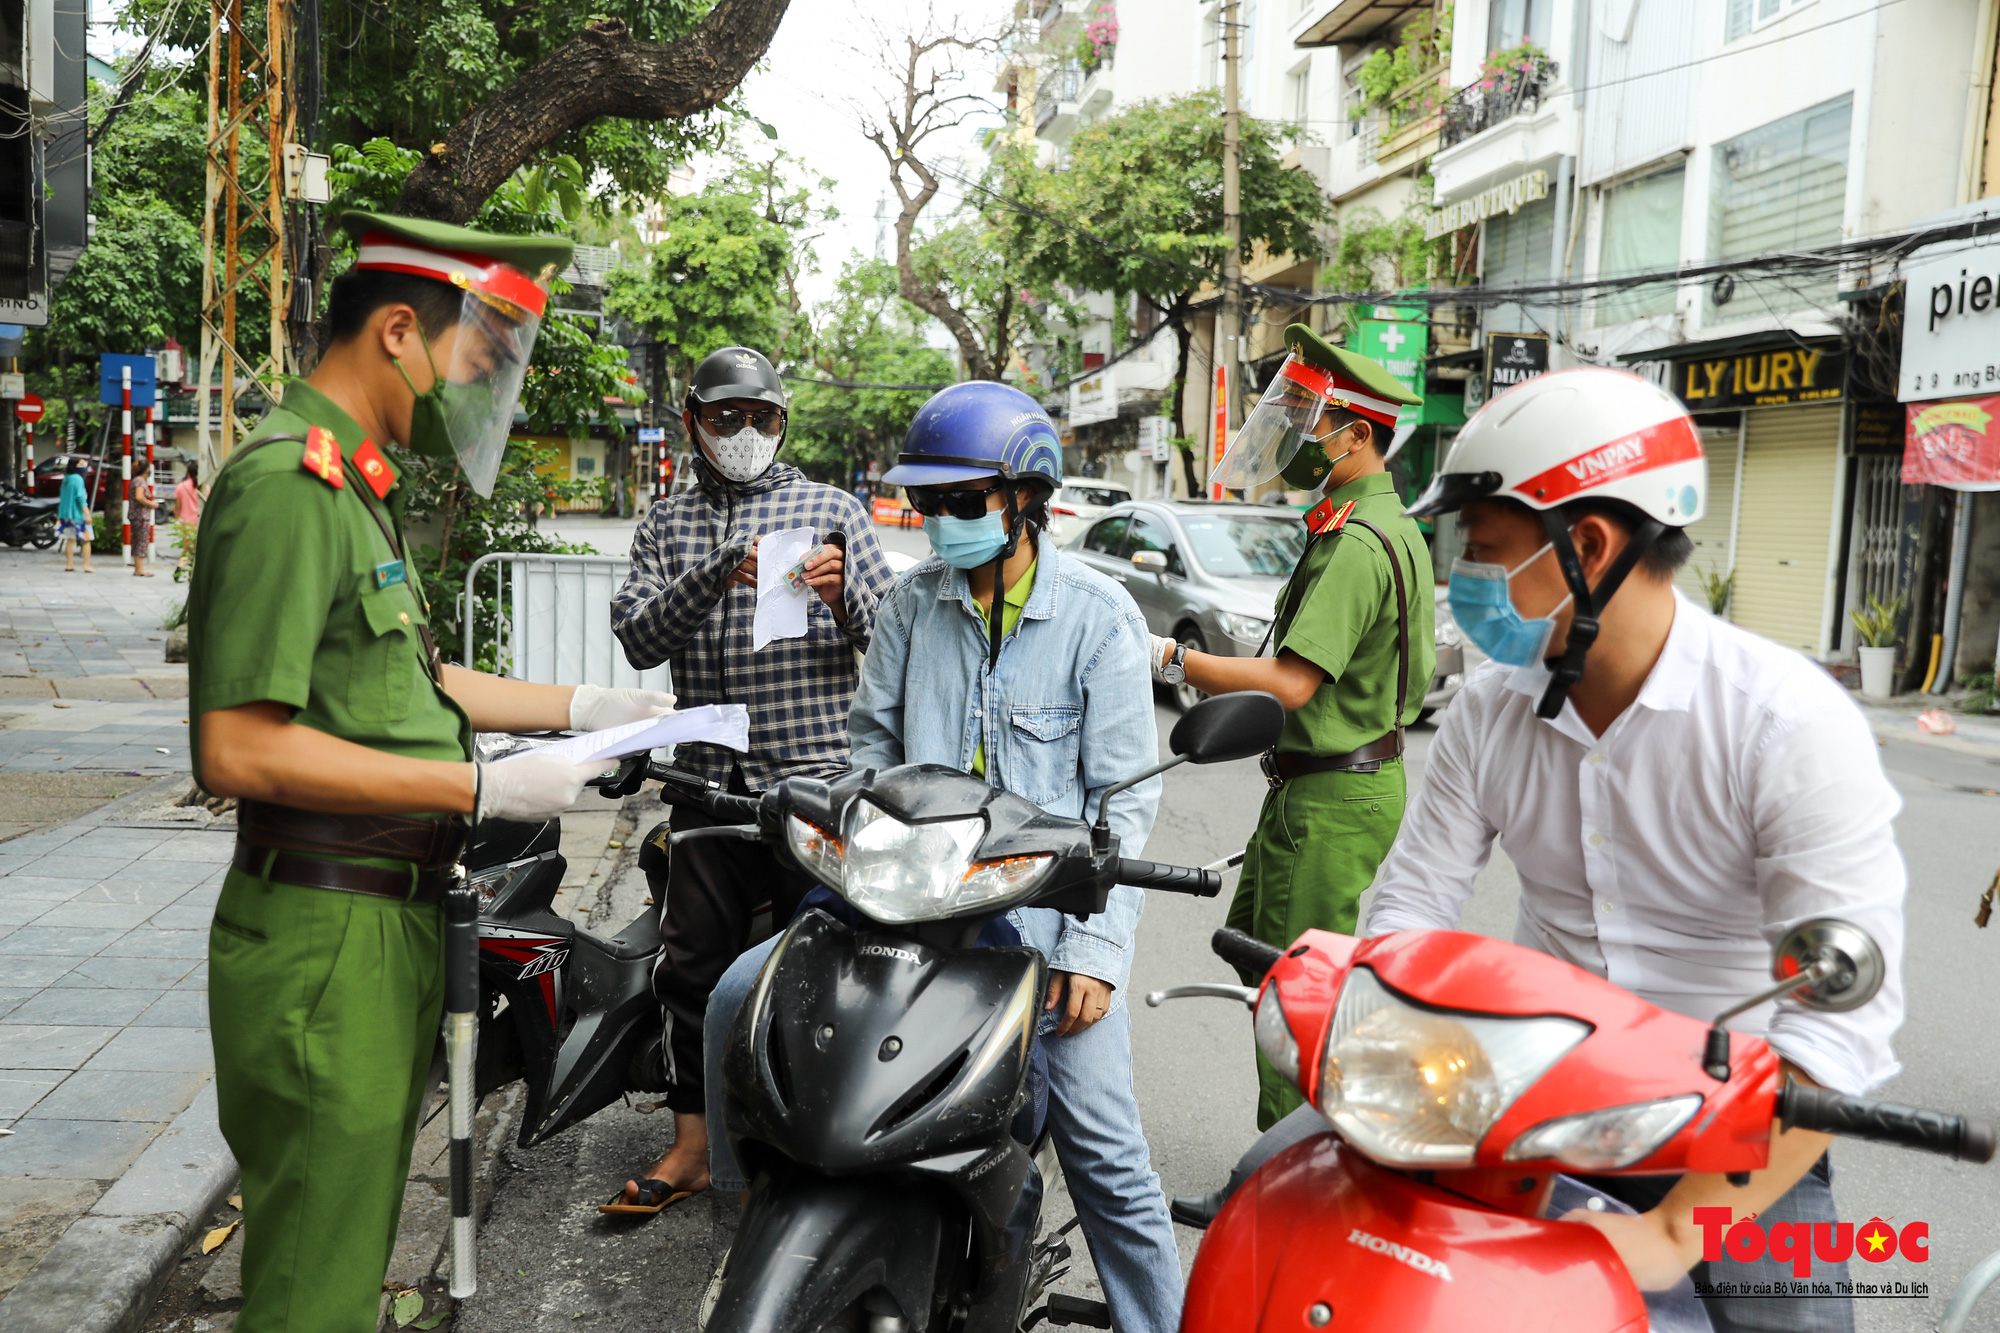 Công an quận Hoàn Kiếm triển khai tổ công tác đặc biệt kiểm soát giấy đi đường, nhiều trường hợp quay đầu bỏ chạy - Ảnh 3.